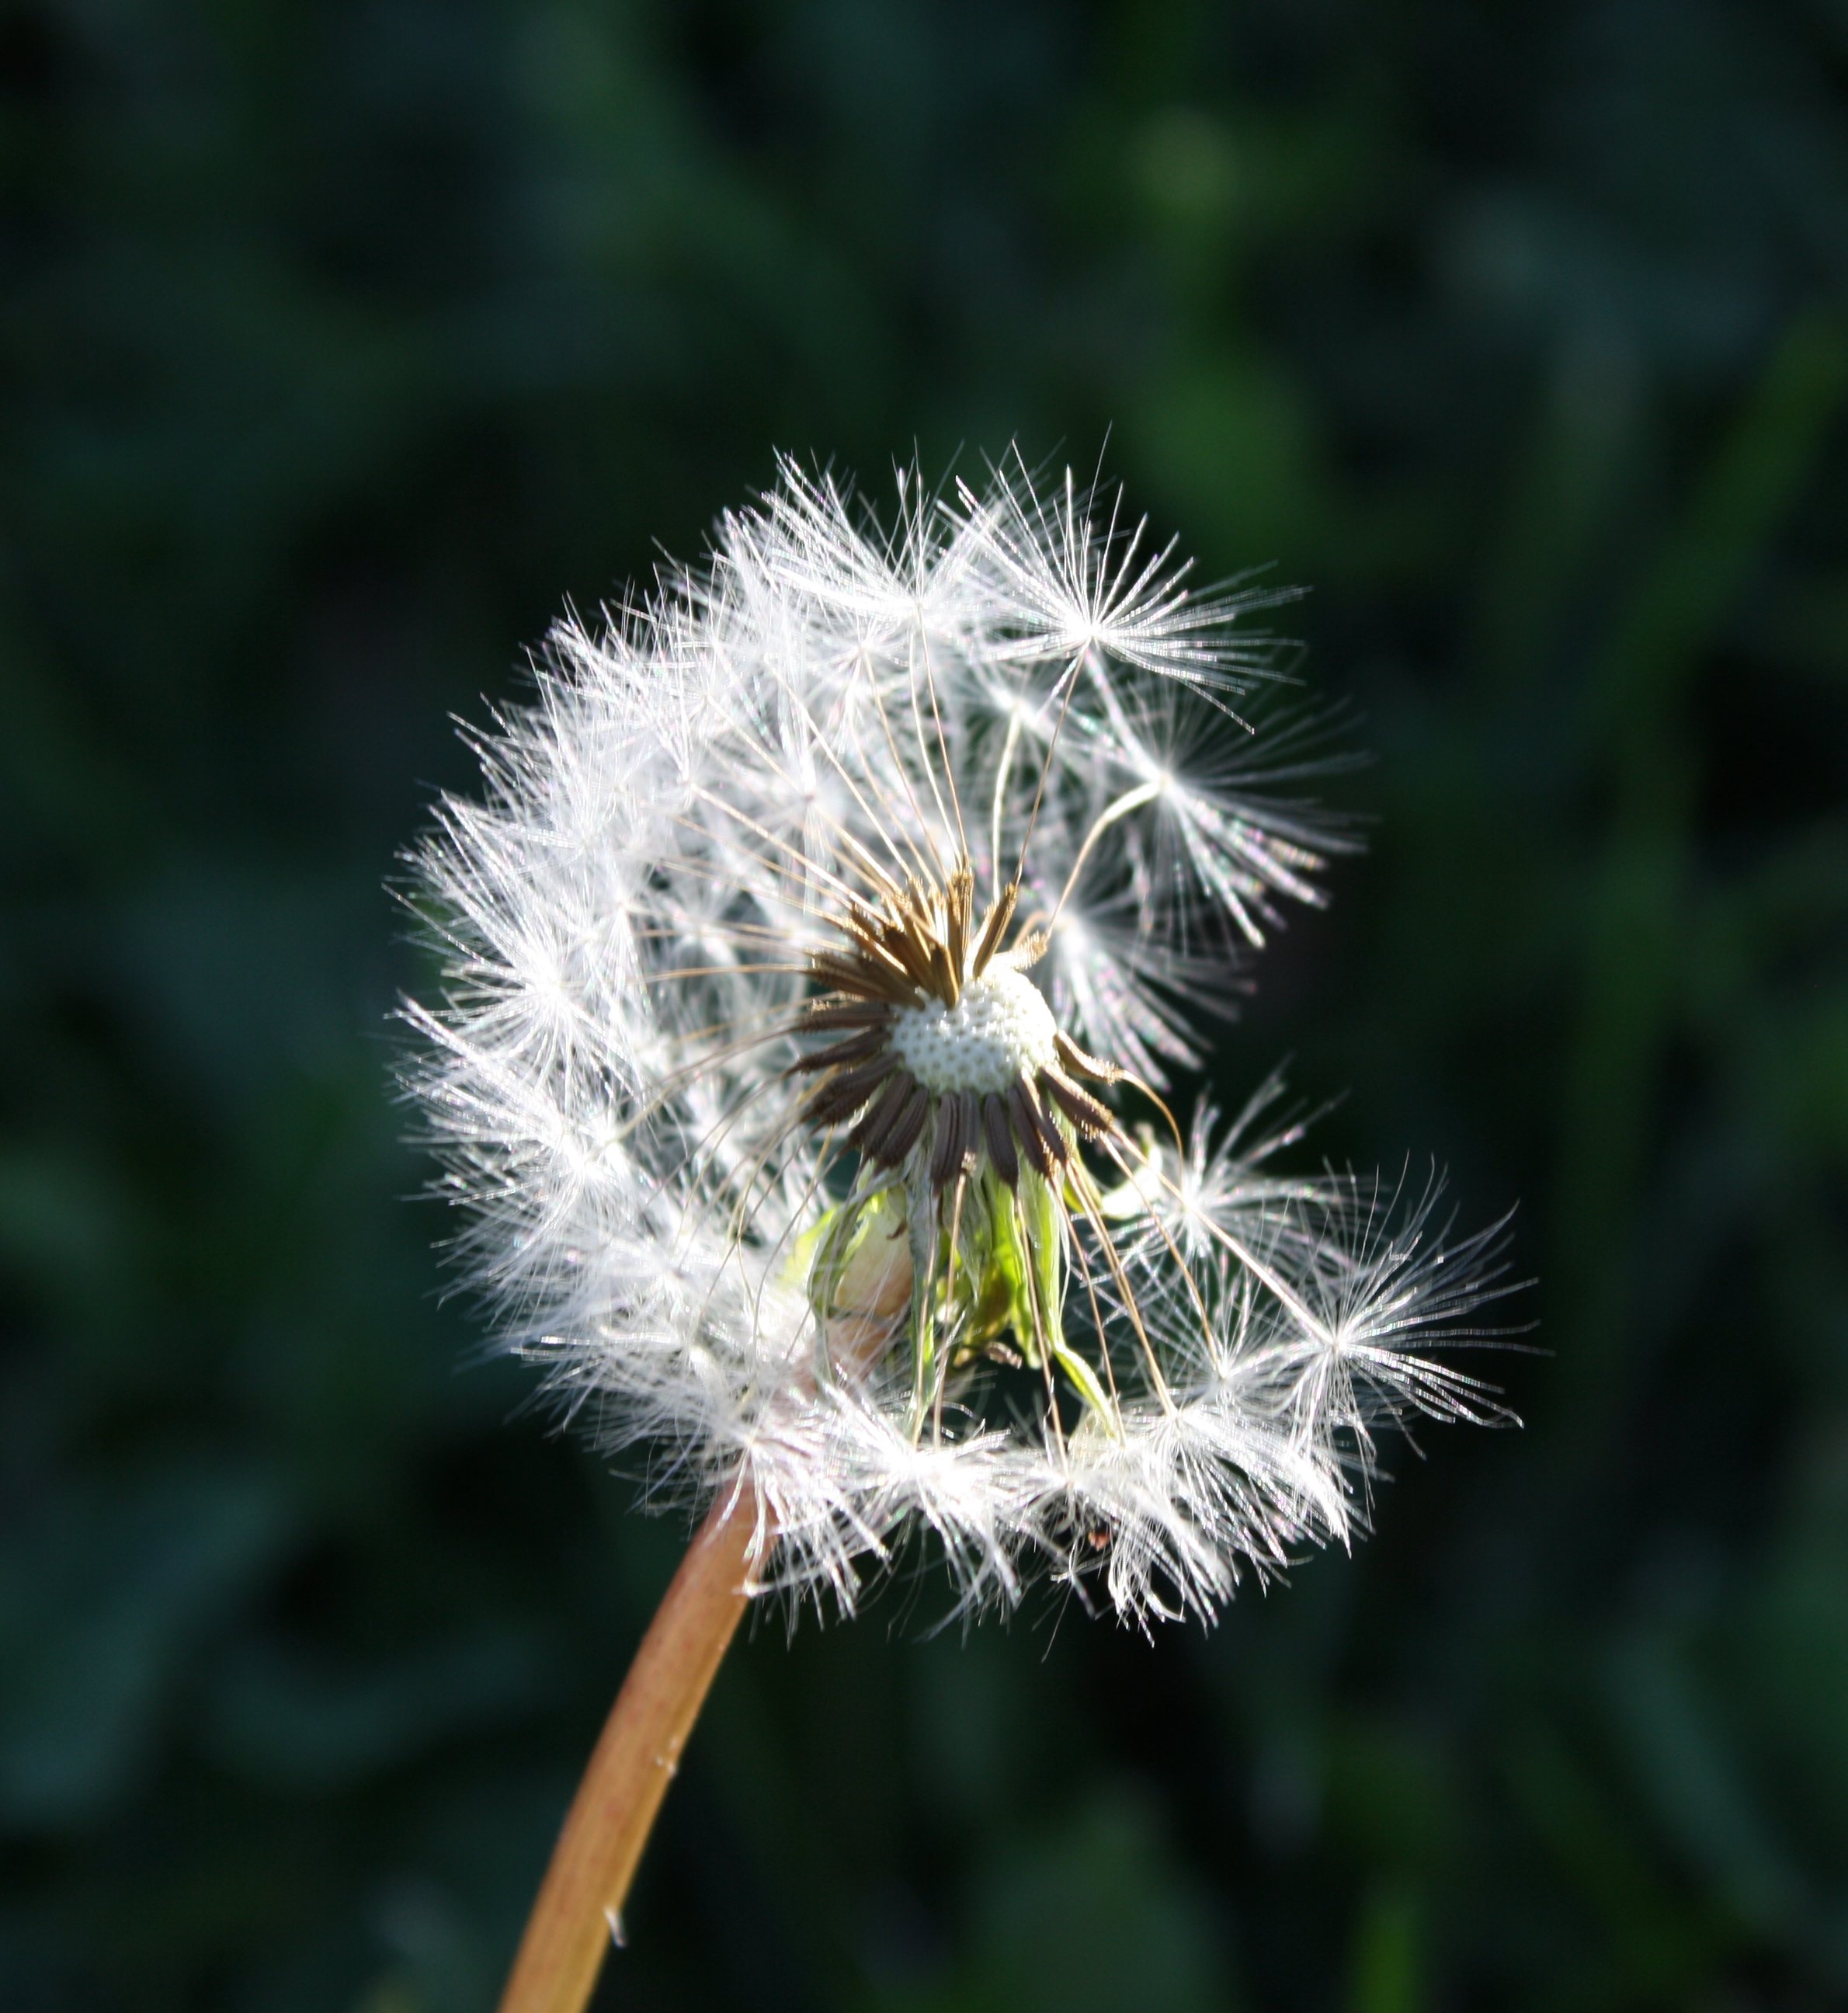 dandelion-seeds-picture-free-photograph-photos-public-domain